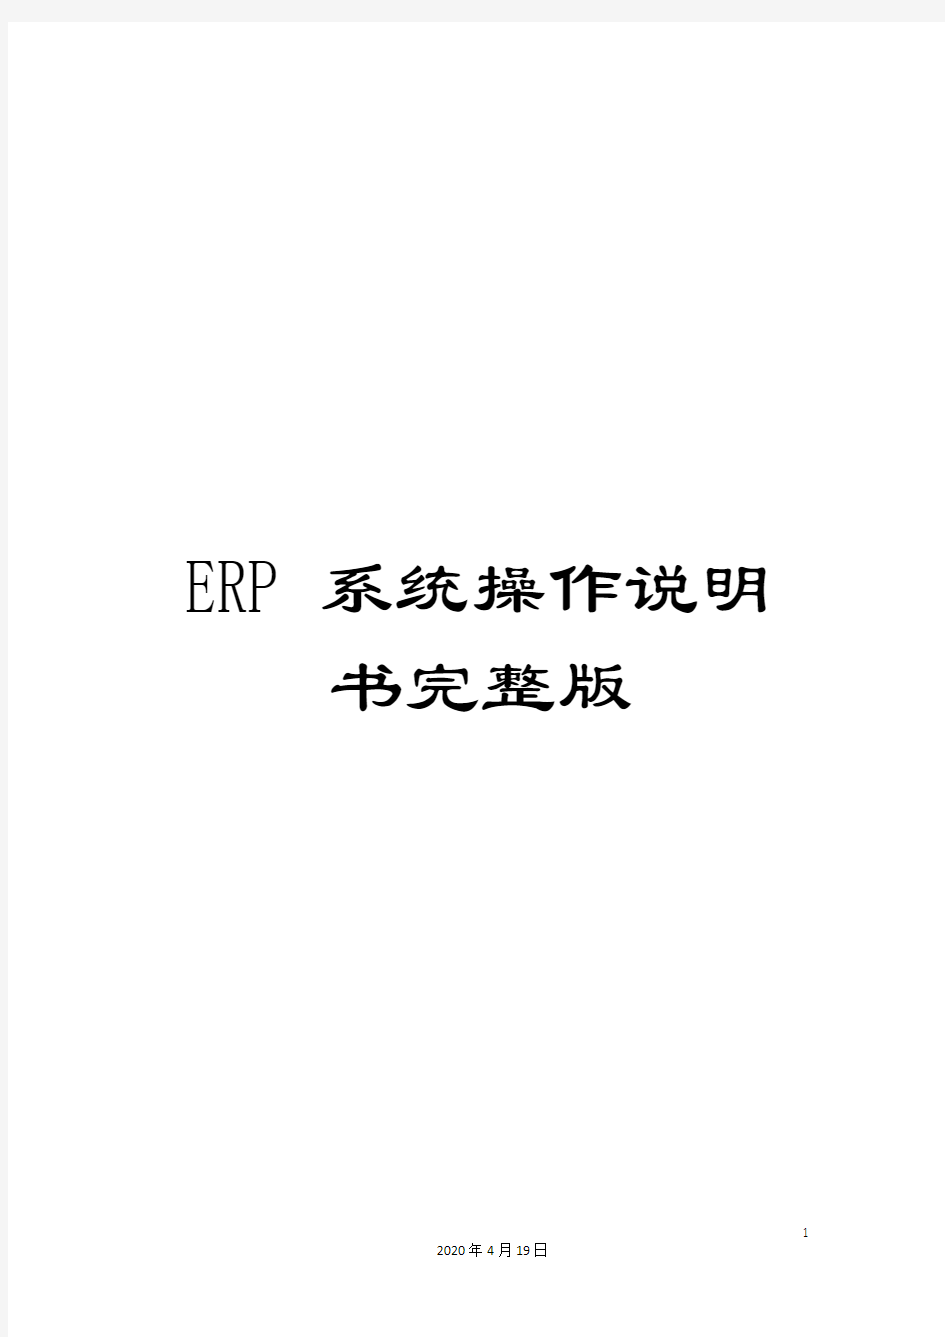 ERP系统操作说明书完整版